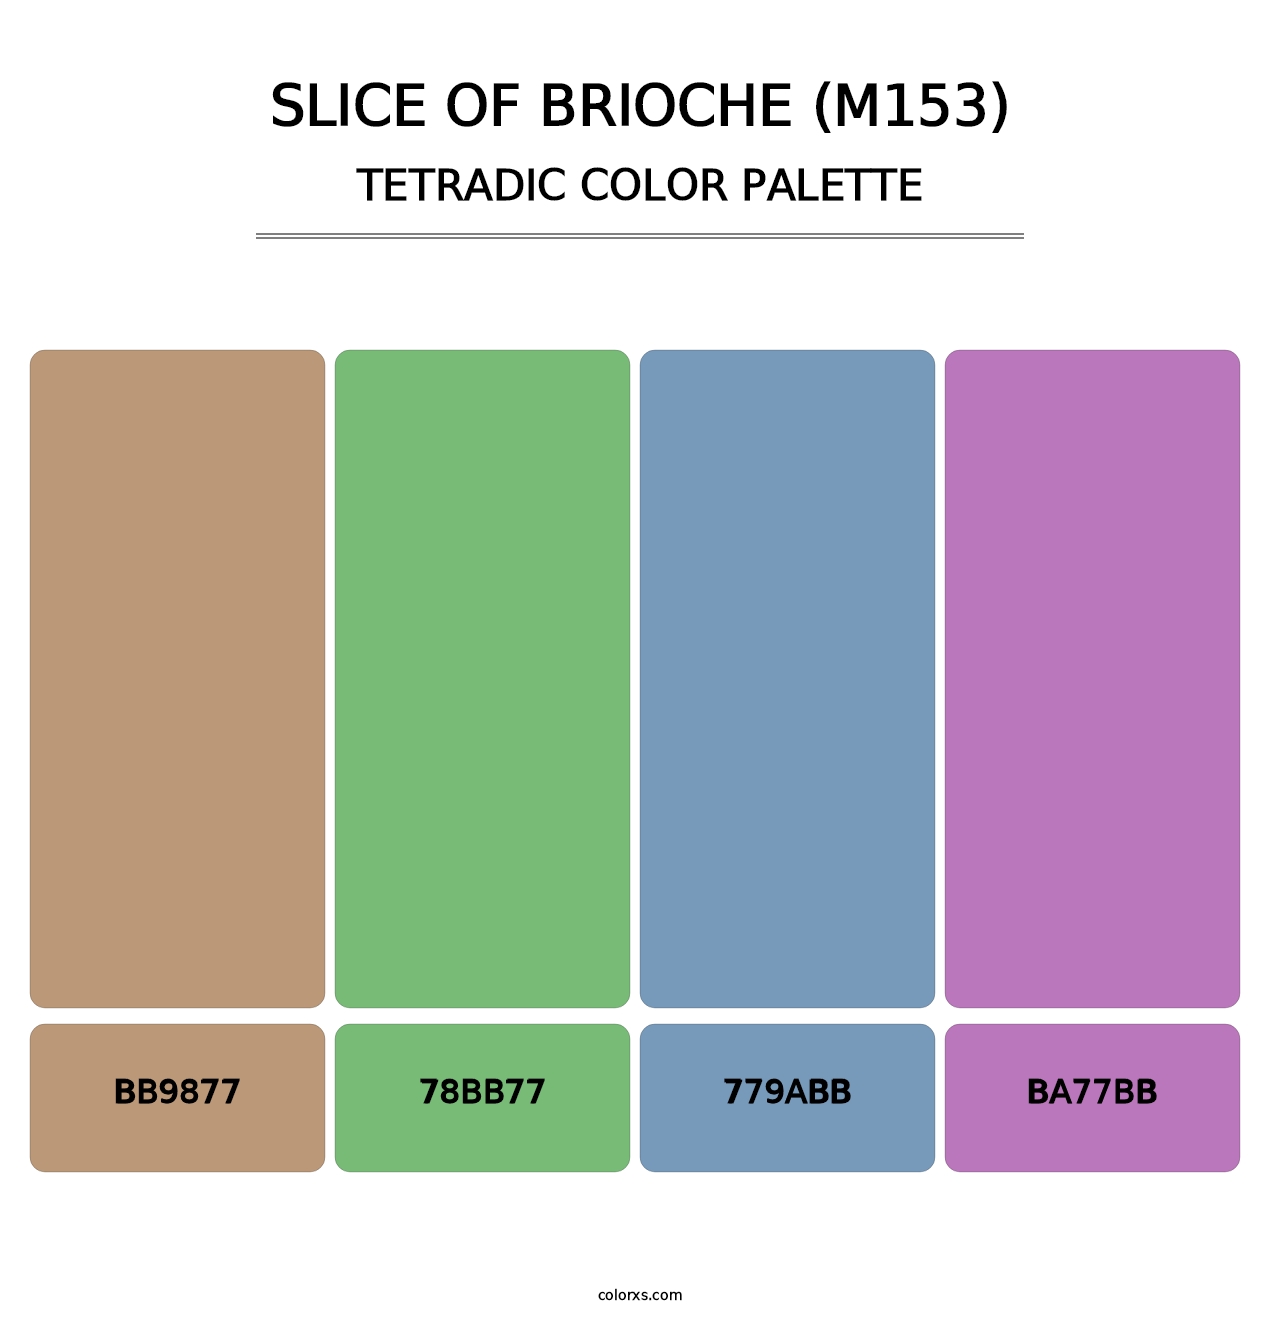 Slice of Brioche (M153) - Tetradic Color Palette